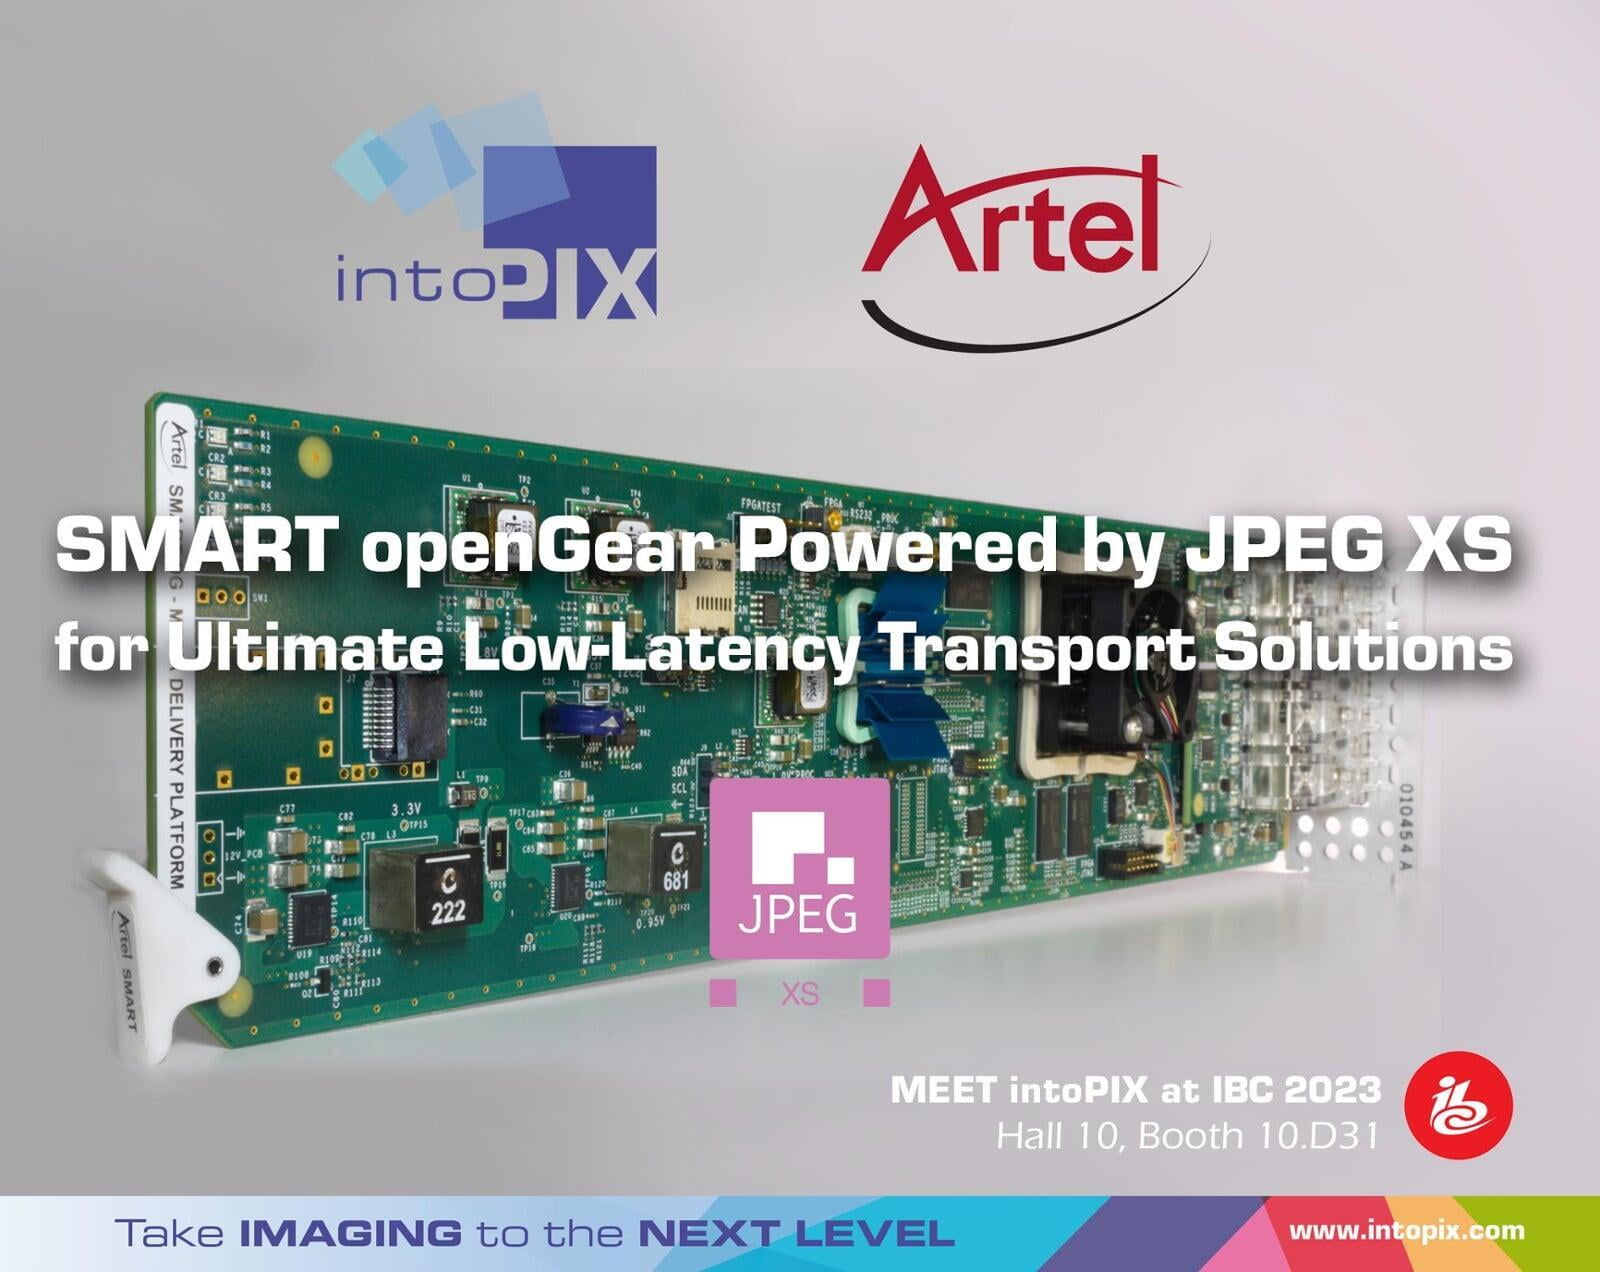 La version améliorée de Artel SMART openGear® s'appuie sur la technologie intoPIX JPEG  XS pour des solutions de transport à faible latence optimales.